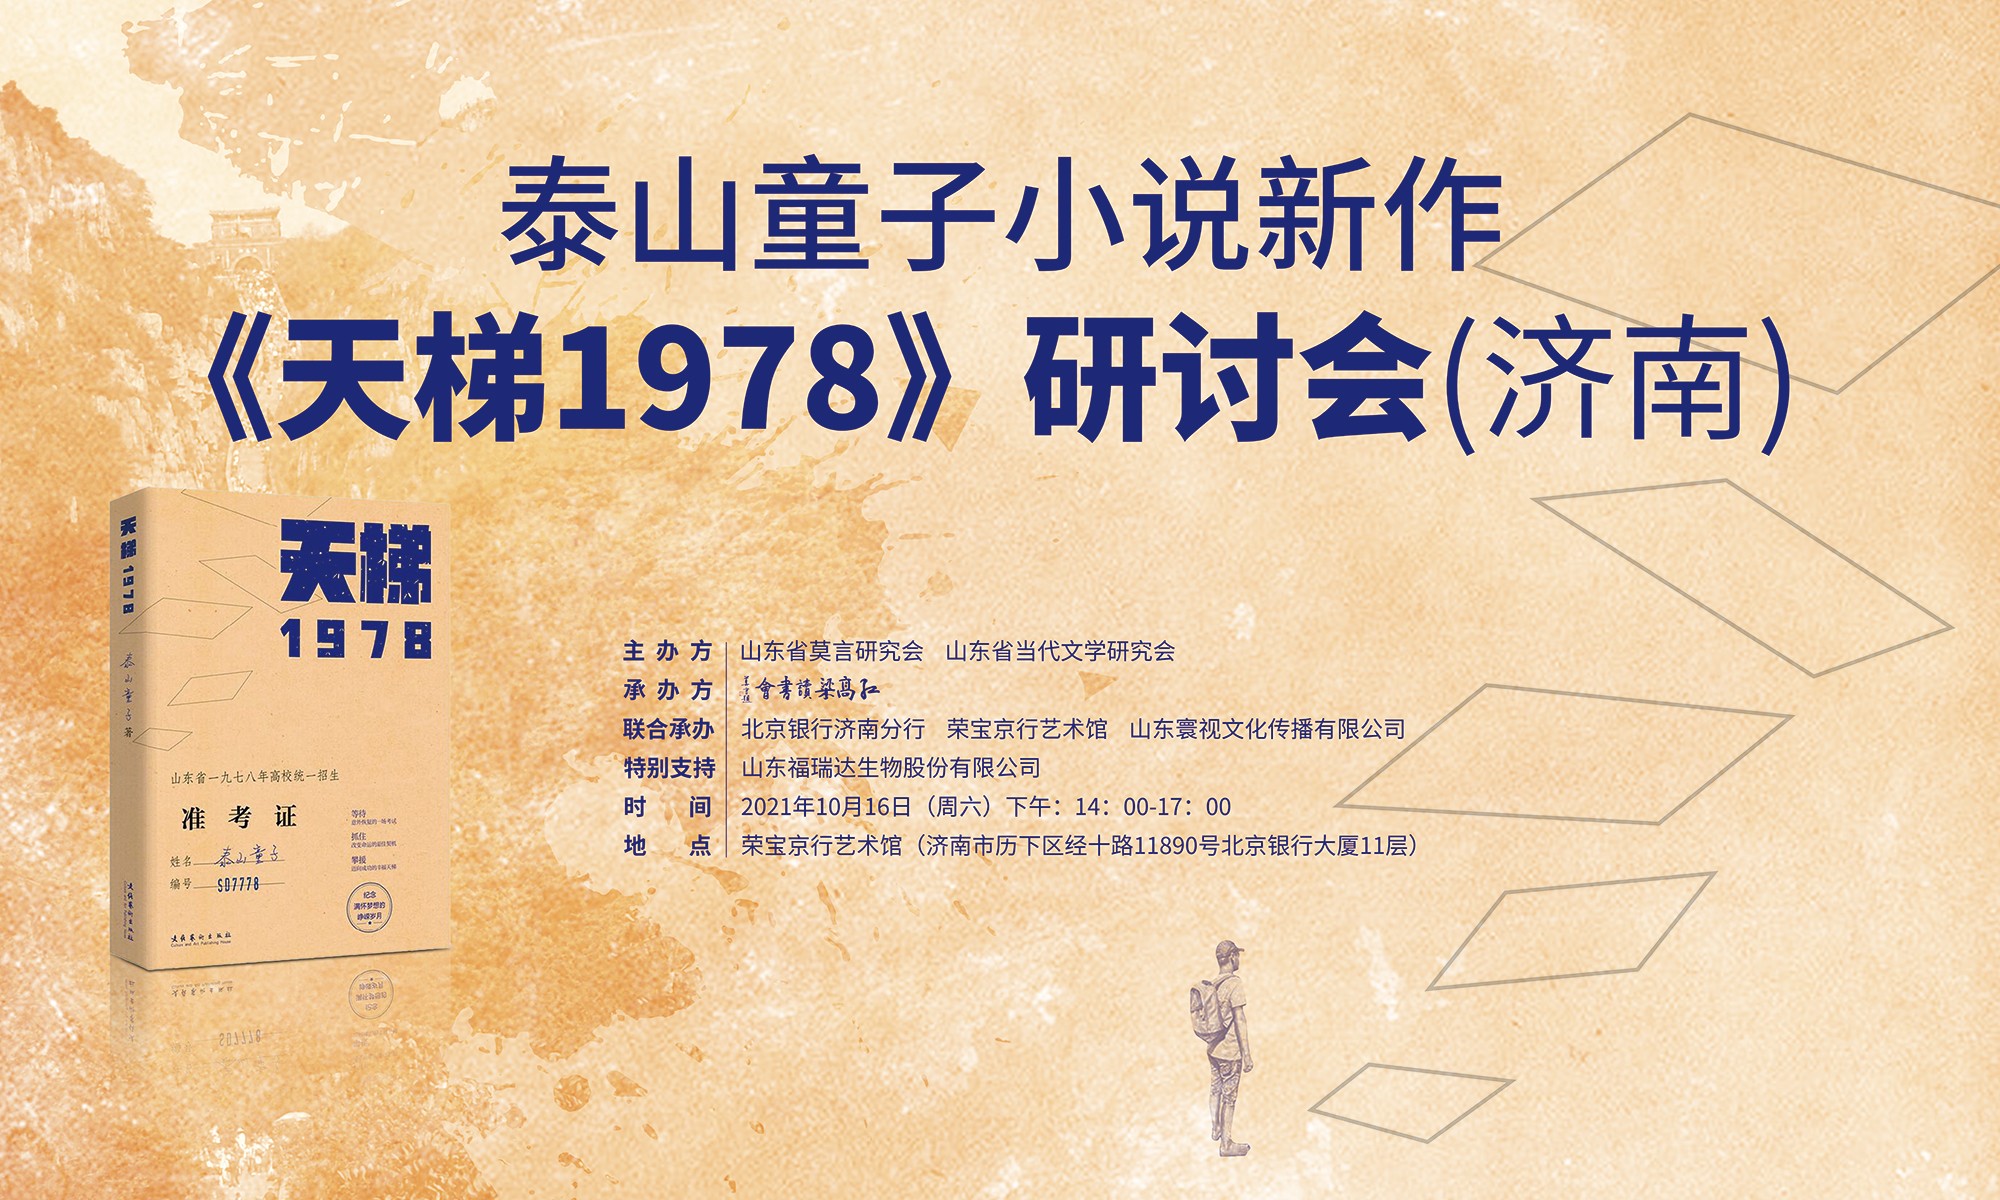 泰山童子新作《天梯——1978》高端学术研讨会在济南召开